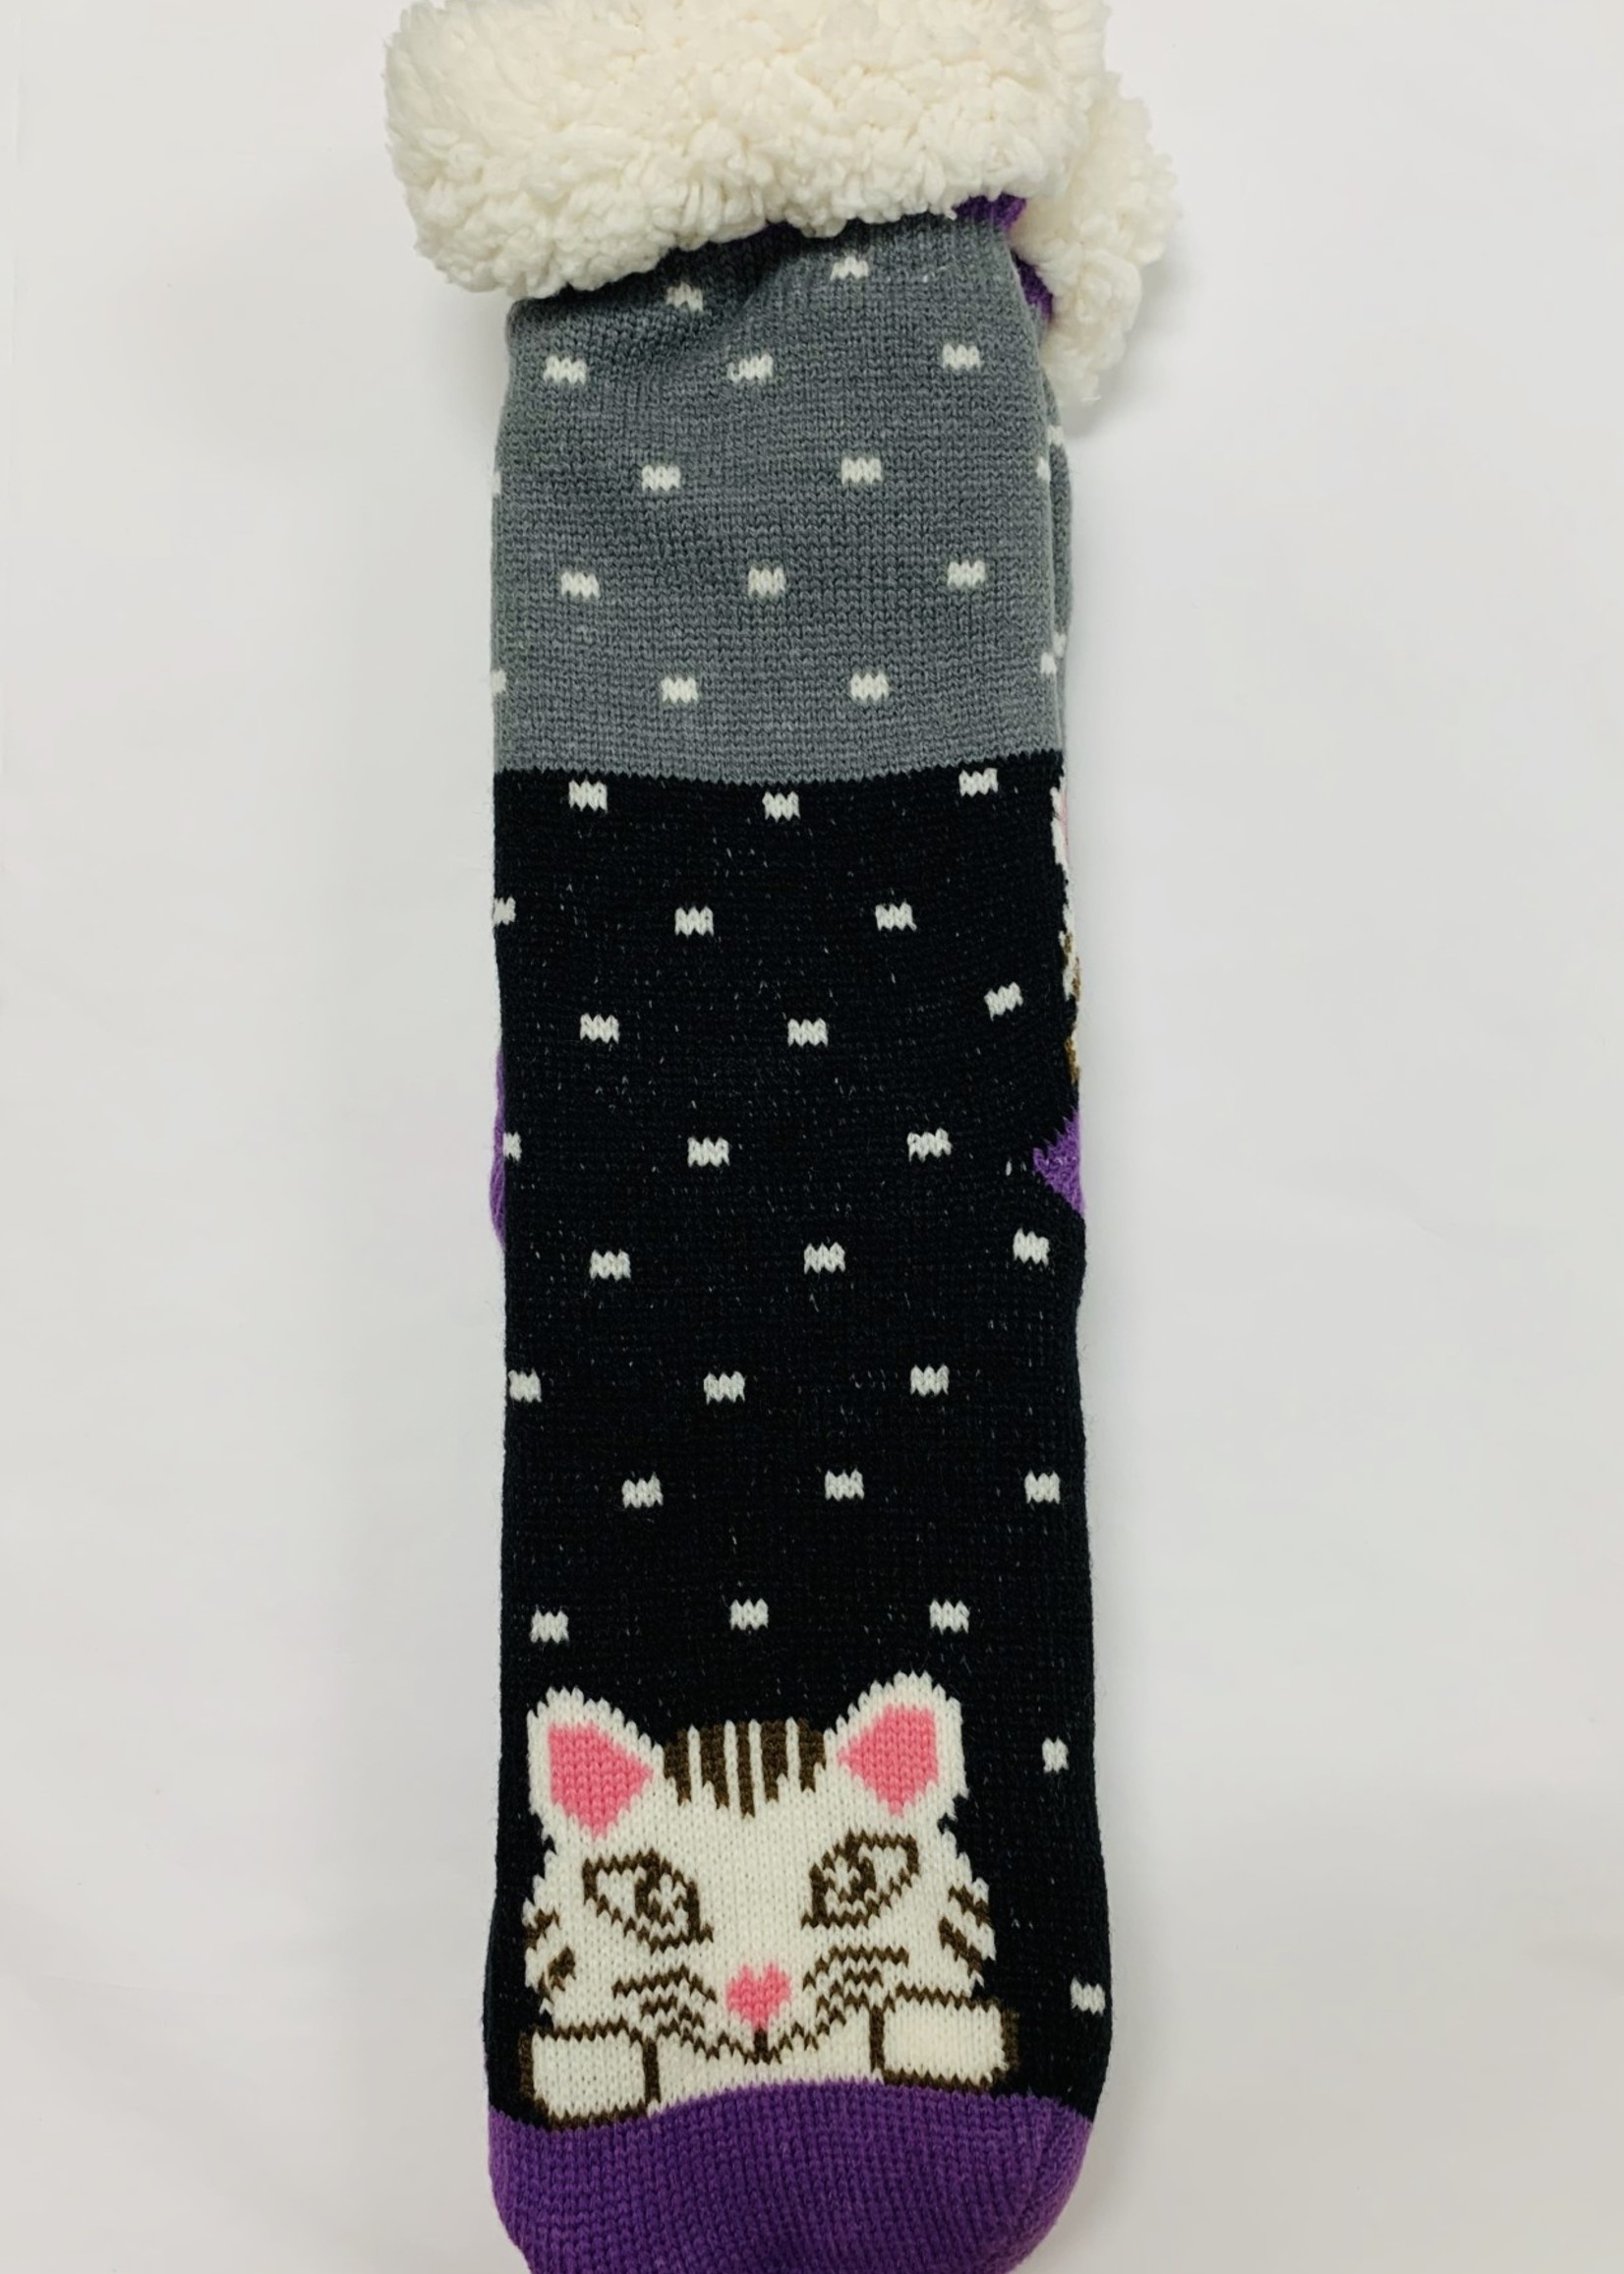 Cheri Bliss Cat Socks